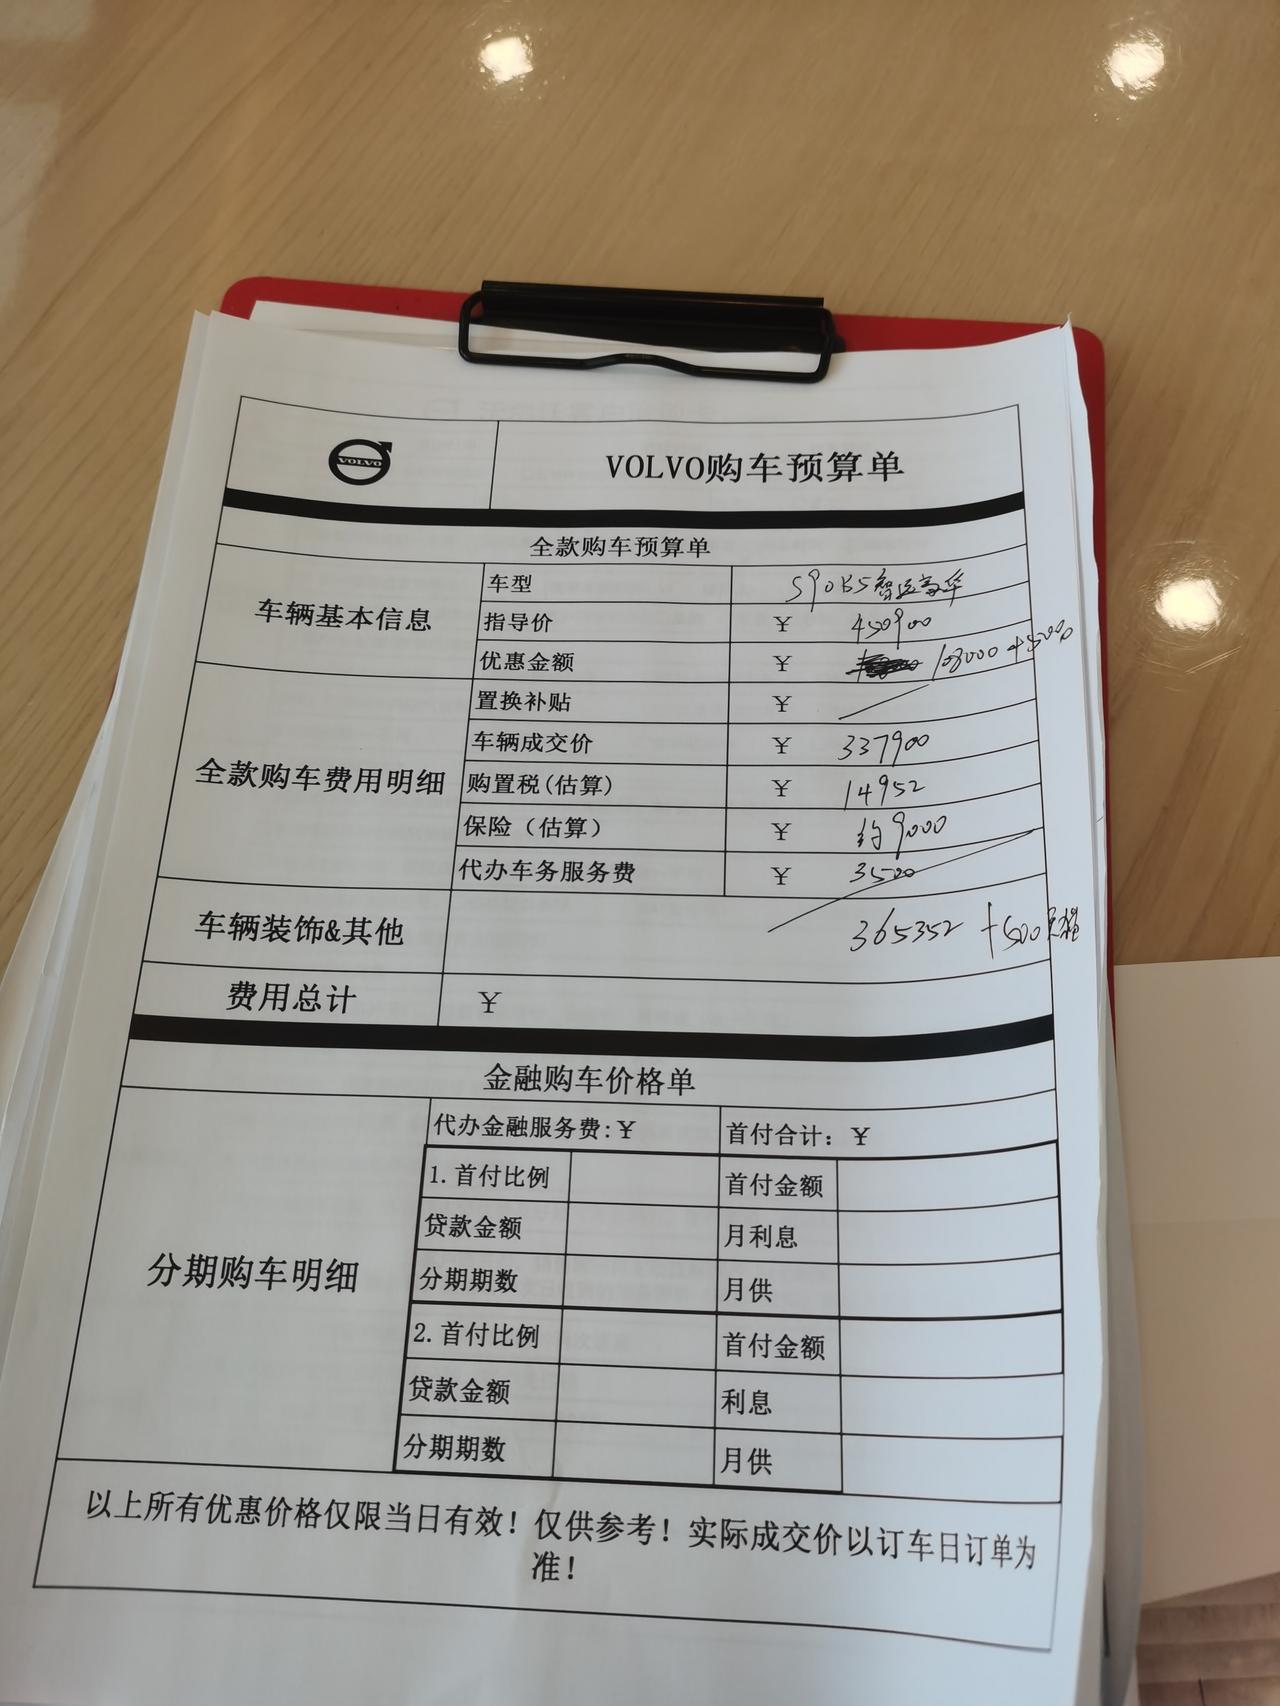 沃尔沃S90 大家帮忙看看，坐标北京，我和销售说当天合适就订给的价格，拿到报价也没和销售墨迹太多，这个价格怎么样，还能大